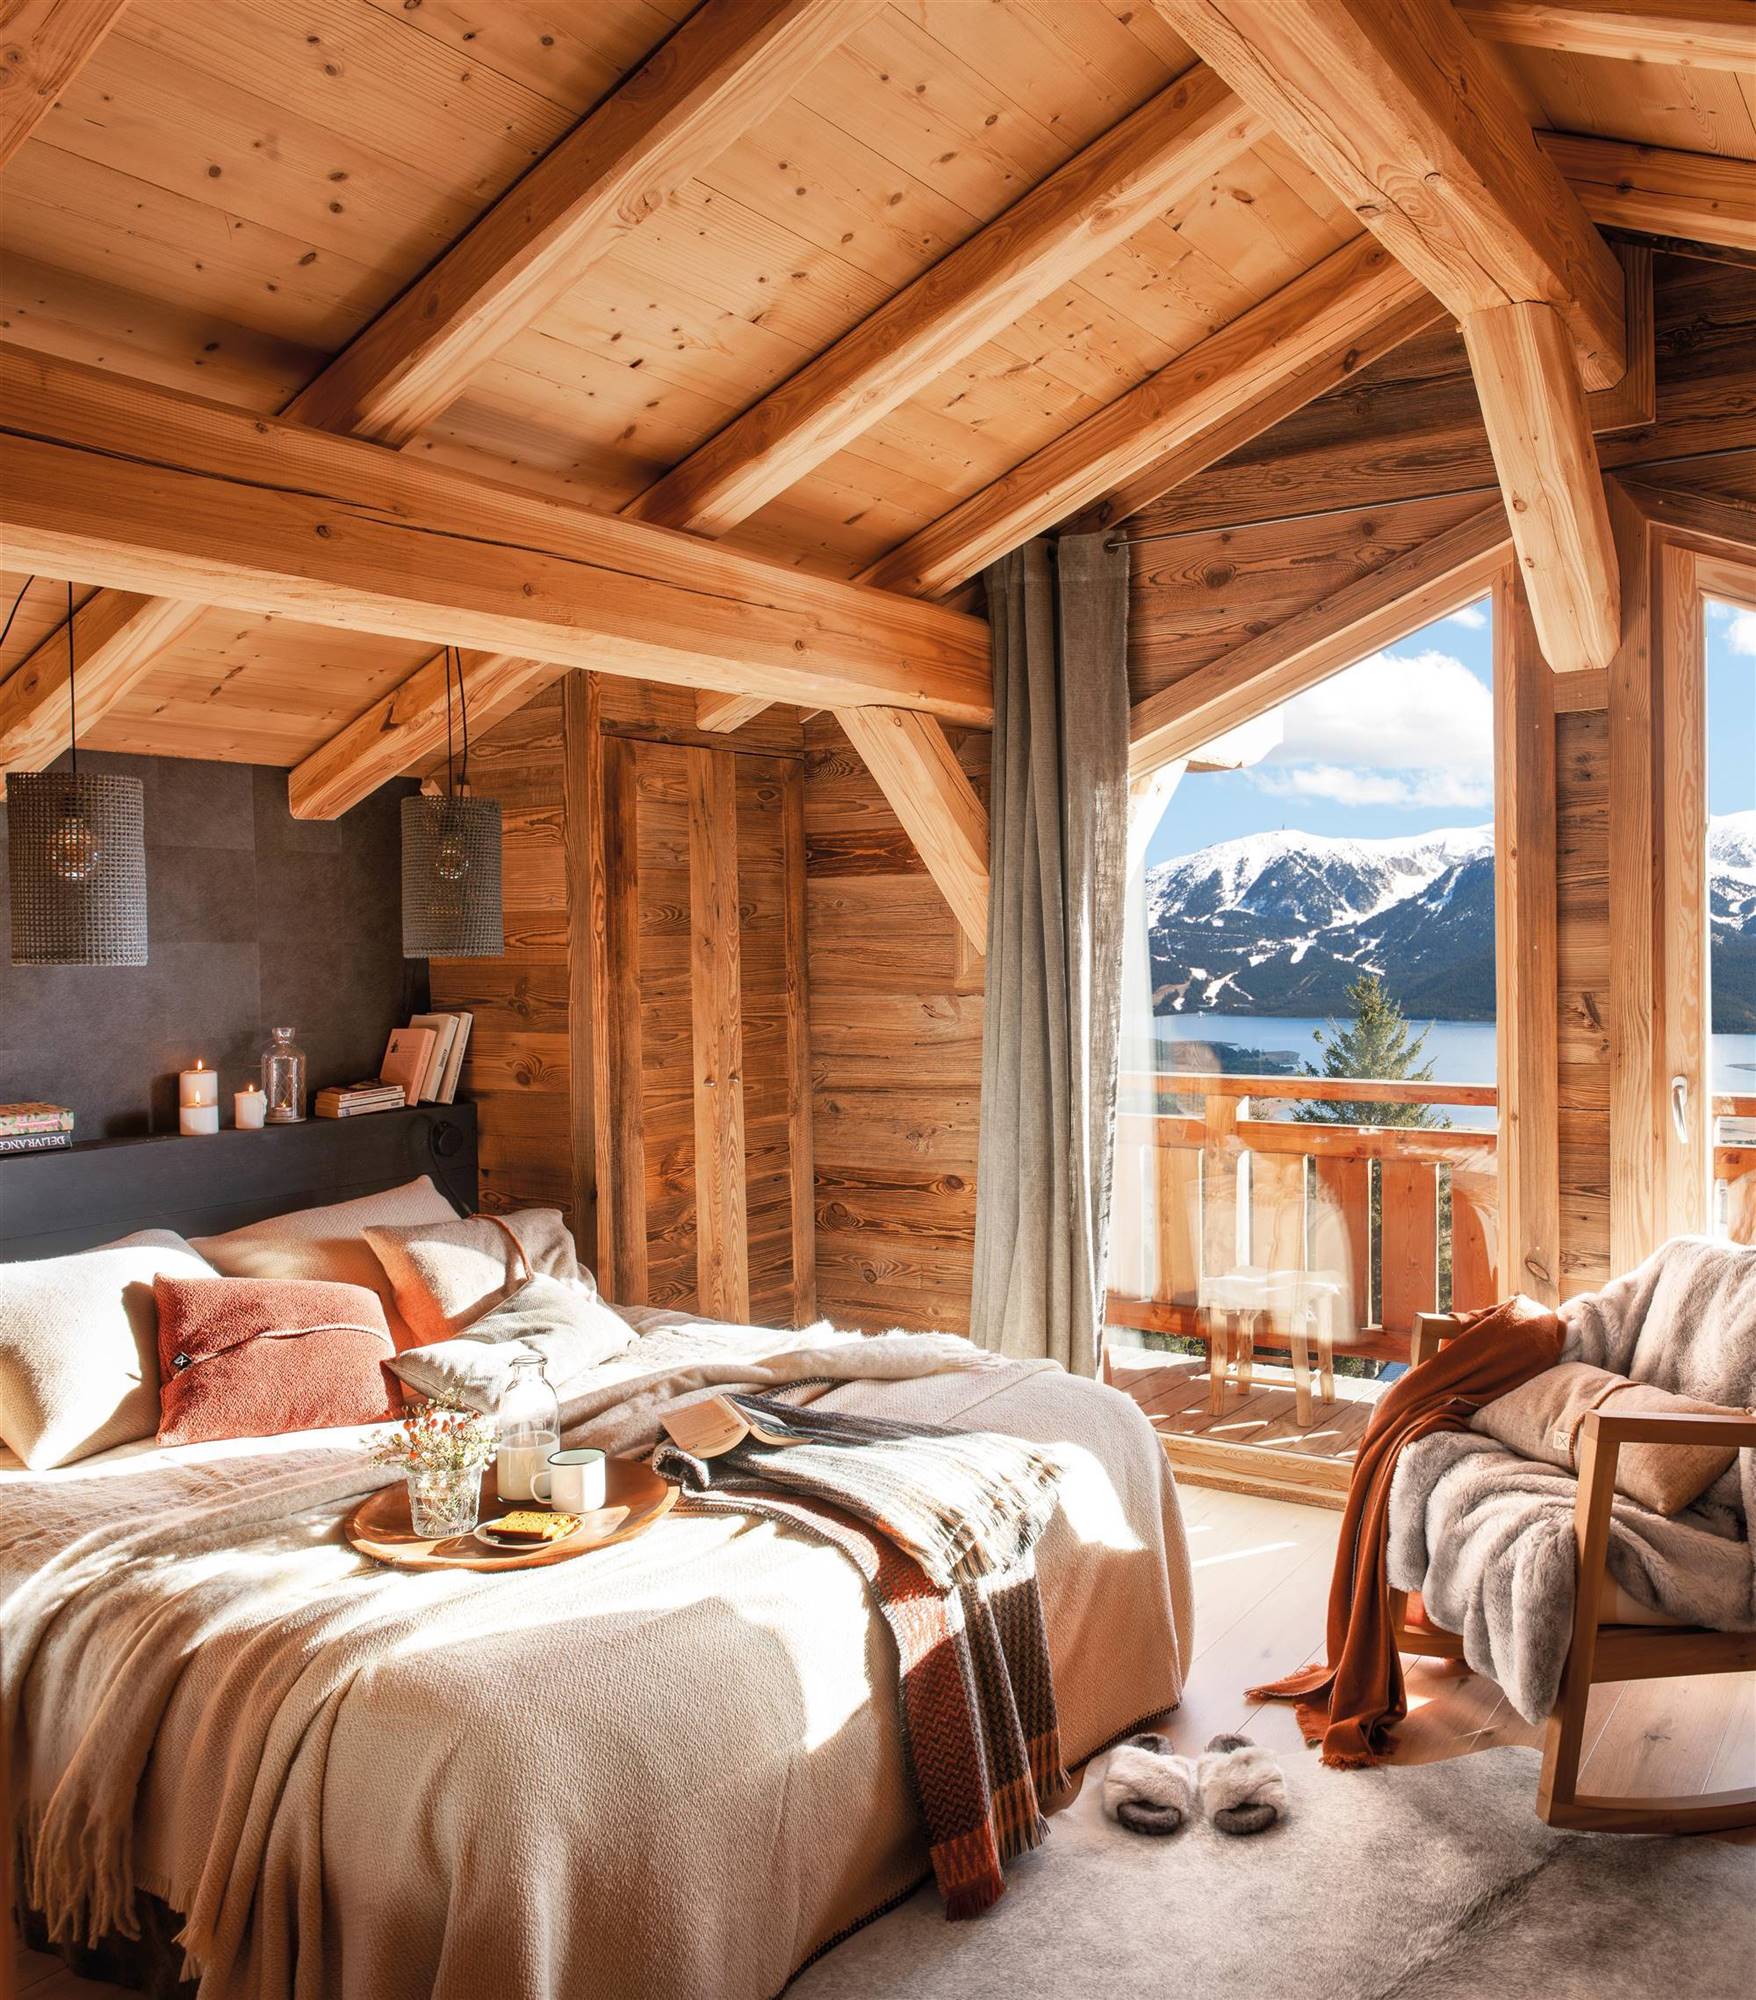 Dormitorio tipo cabaña con vigas de madera, cabecero gris oscuro y butaca.